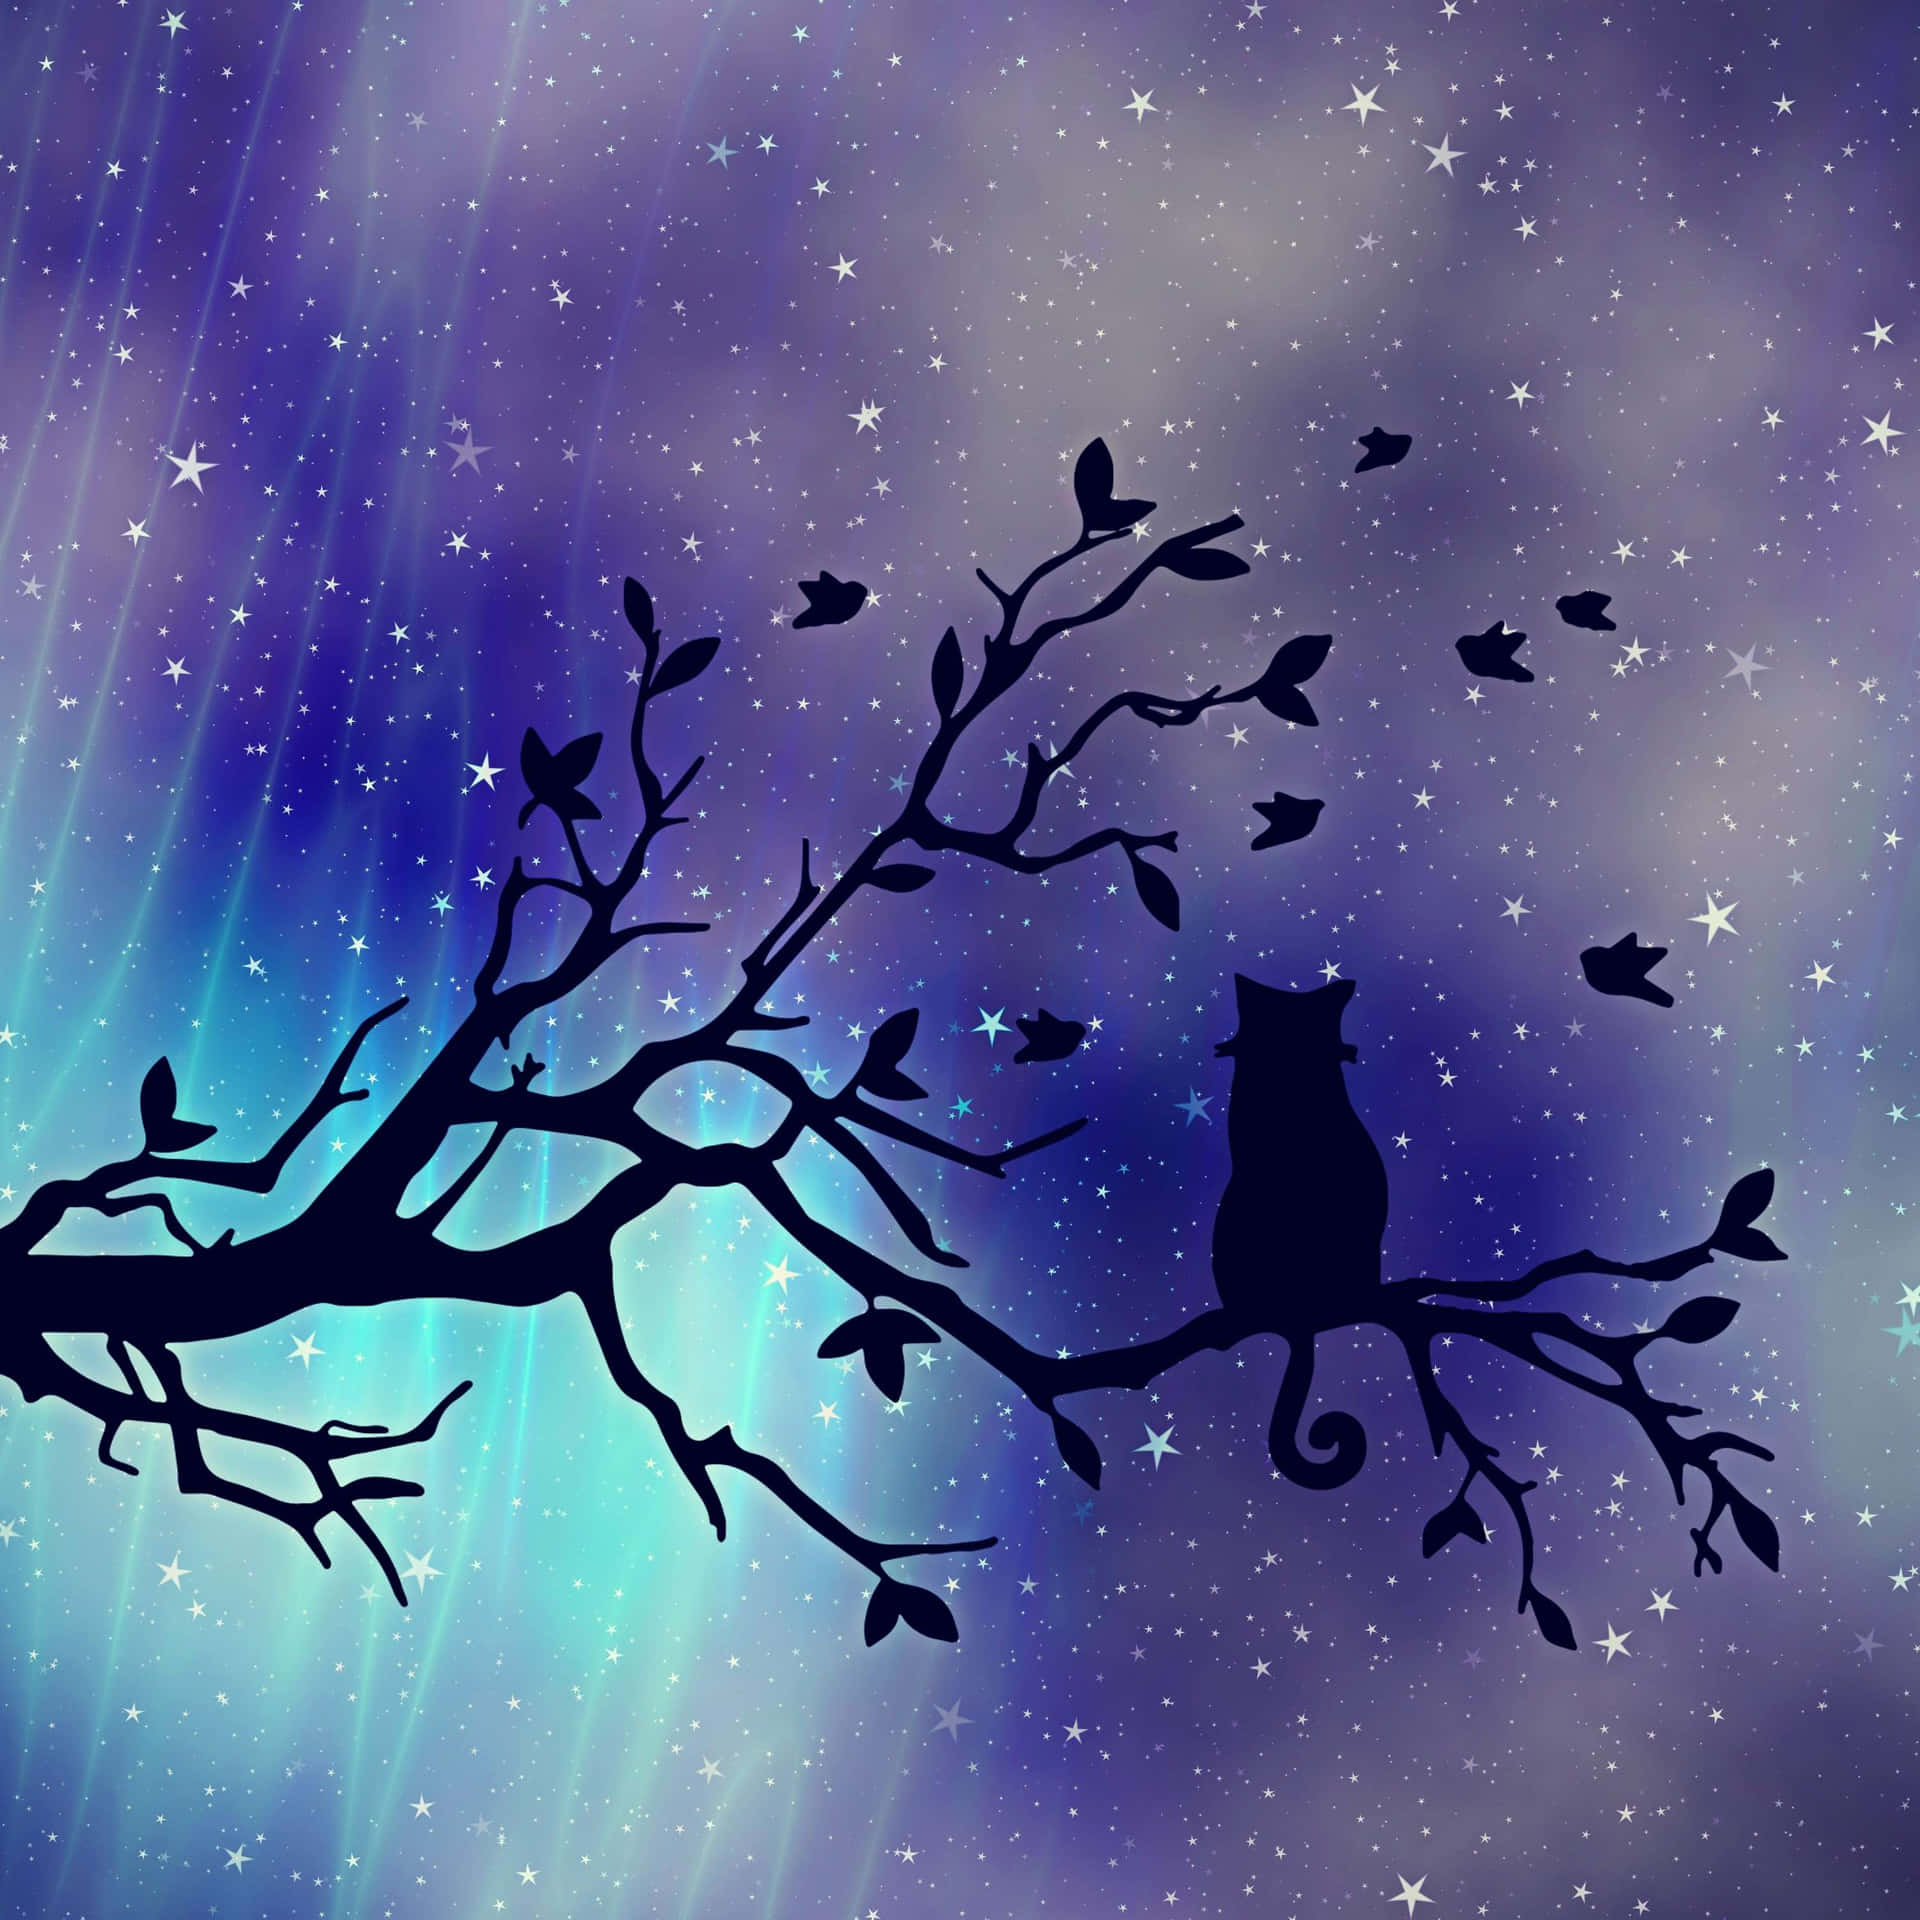 Umgato Sentado Em Um Galho De Árvore Com Estrelas No Céu Papel de Parede